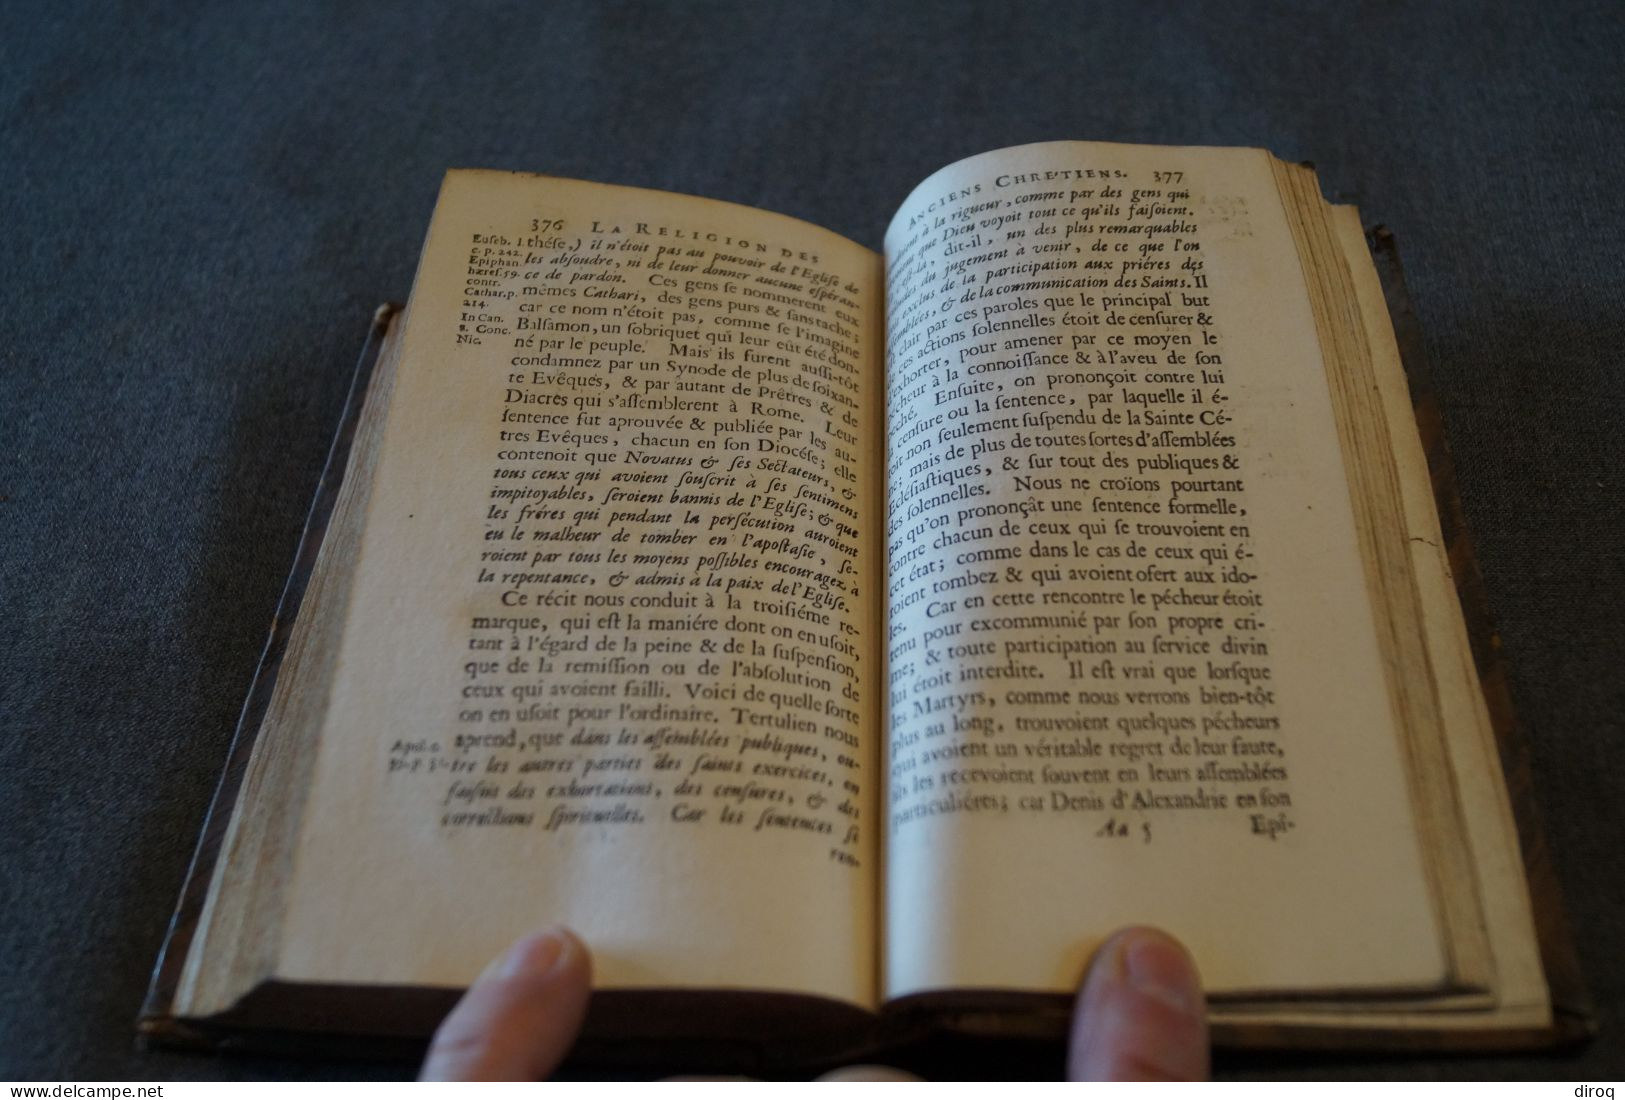 RARE,1711,la religion des Anciens chrétiens,Amsterdam,Laques Desbordes,Guillaume Cave,400 pages,17/10Cm